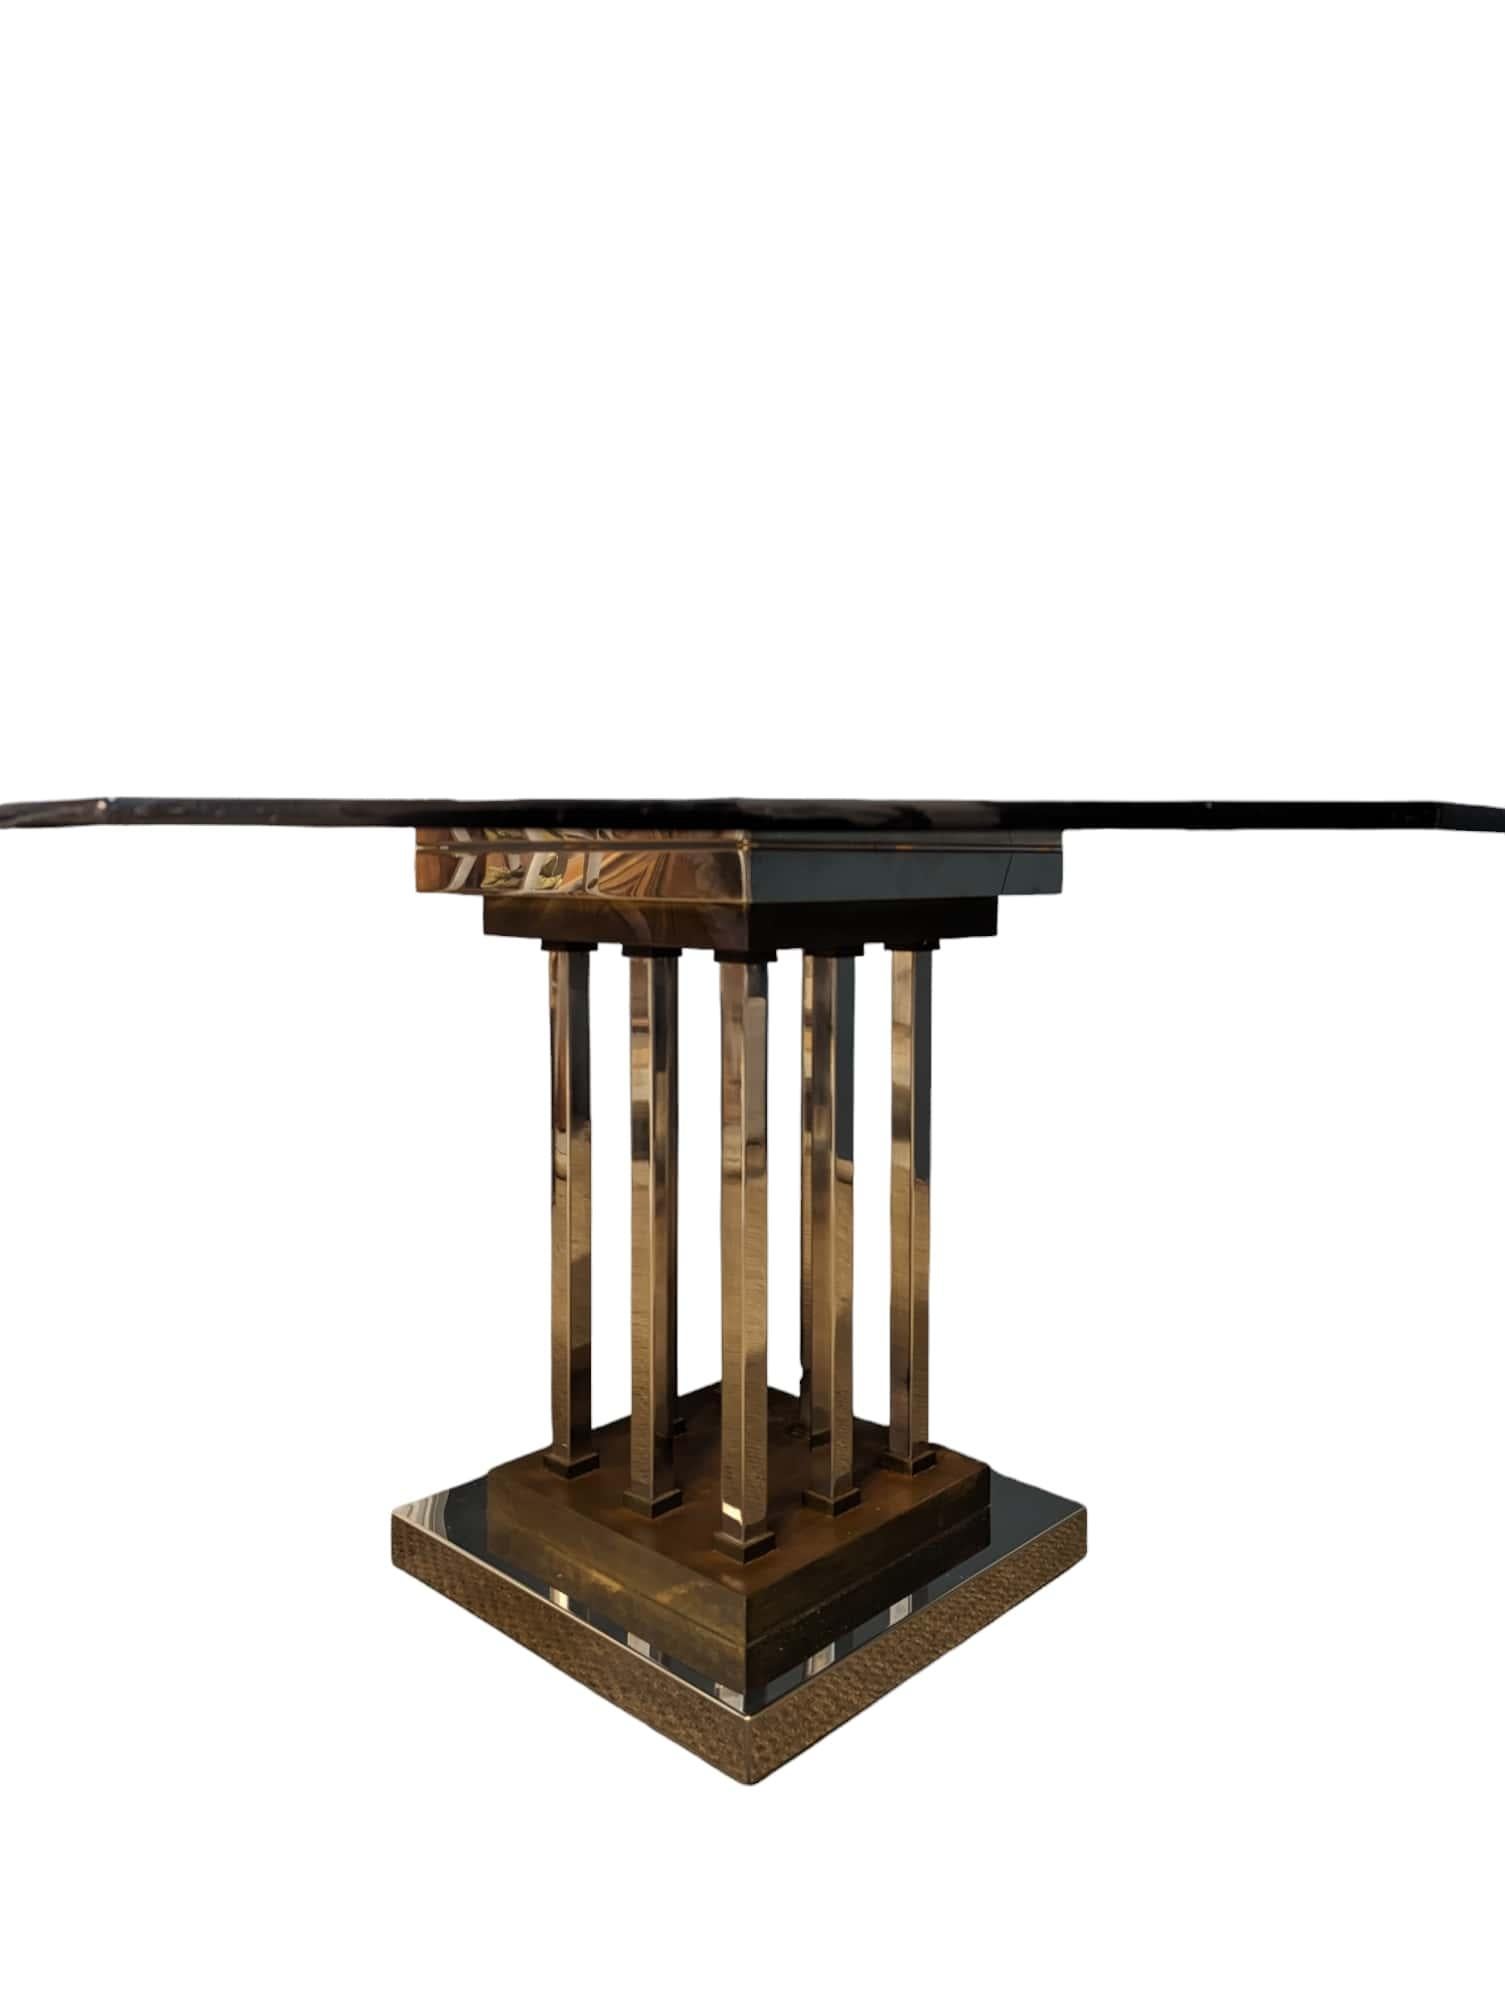 Ich komme aus Frankreich. Tauchen Sie ein in die Welt des italienischen Designs mit diesem bemerkenswerten achteckigen Tisch, der von dem berühmten Romeo Rega signiert ist. Ein Stück, das Form und Funktionalität auf elegante Weise verbindet.

Mit